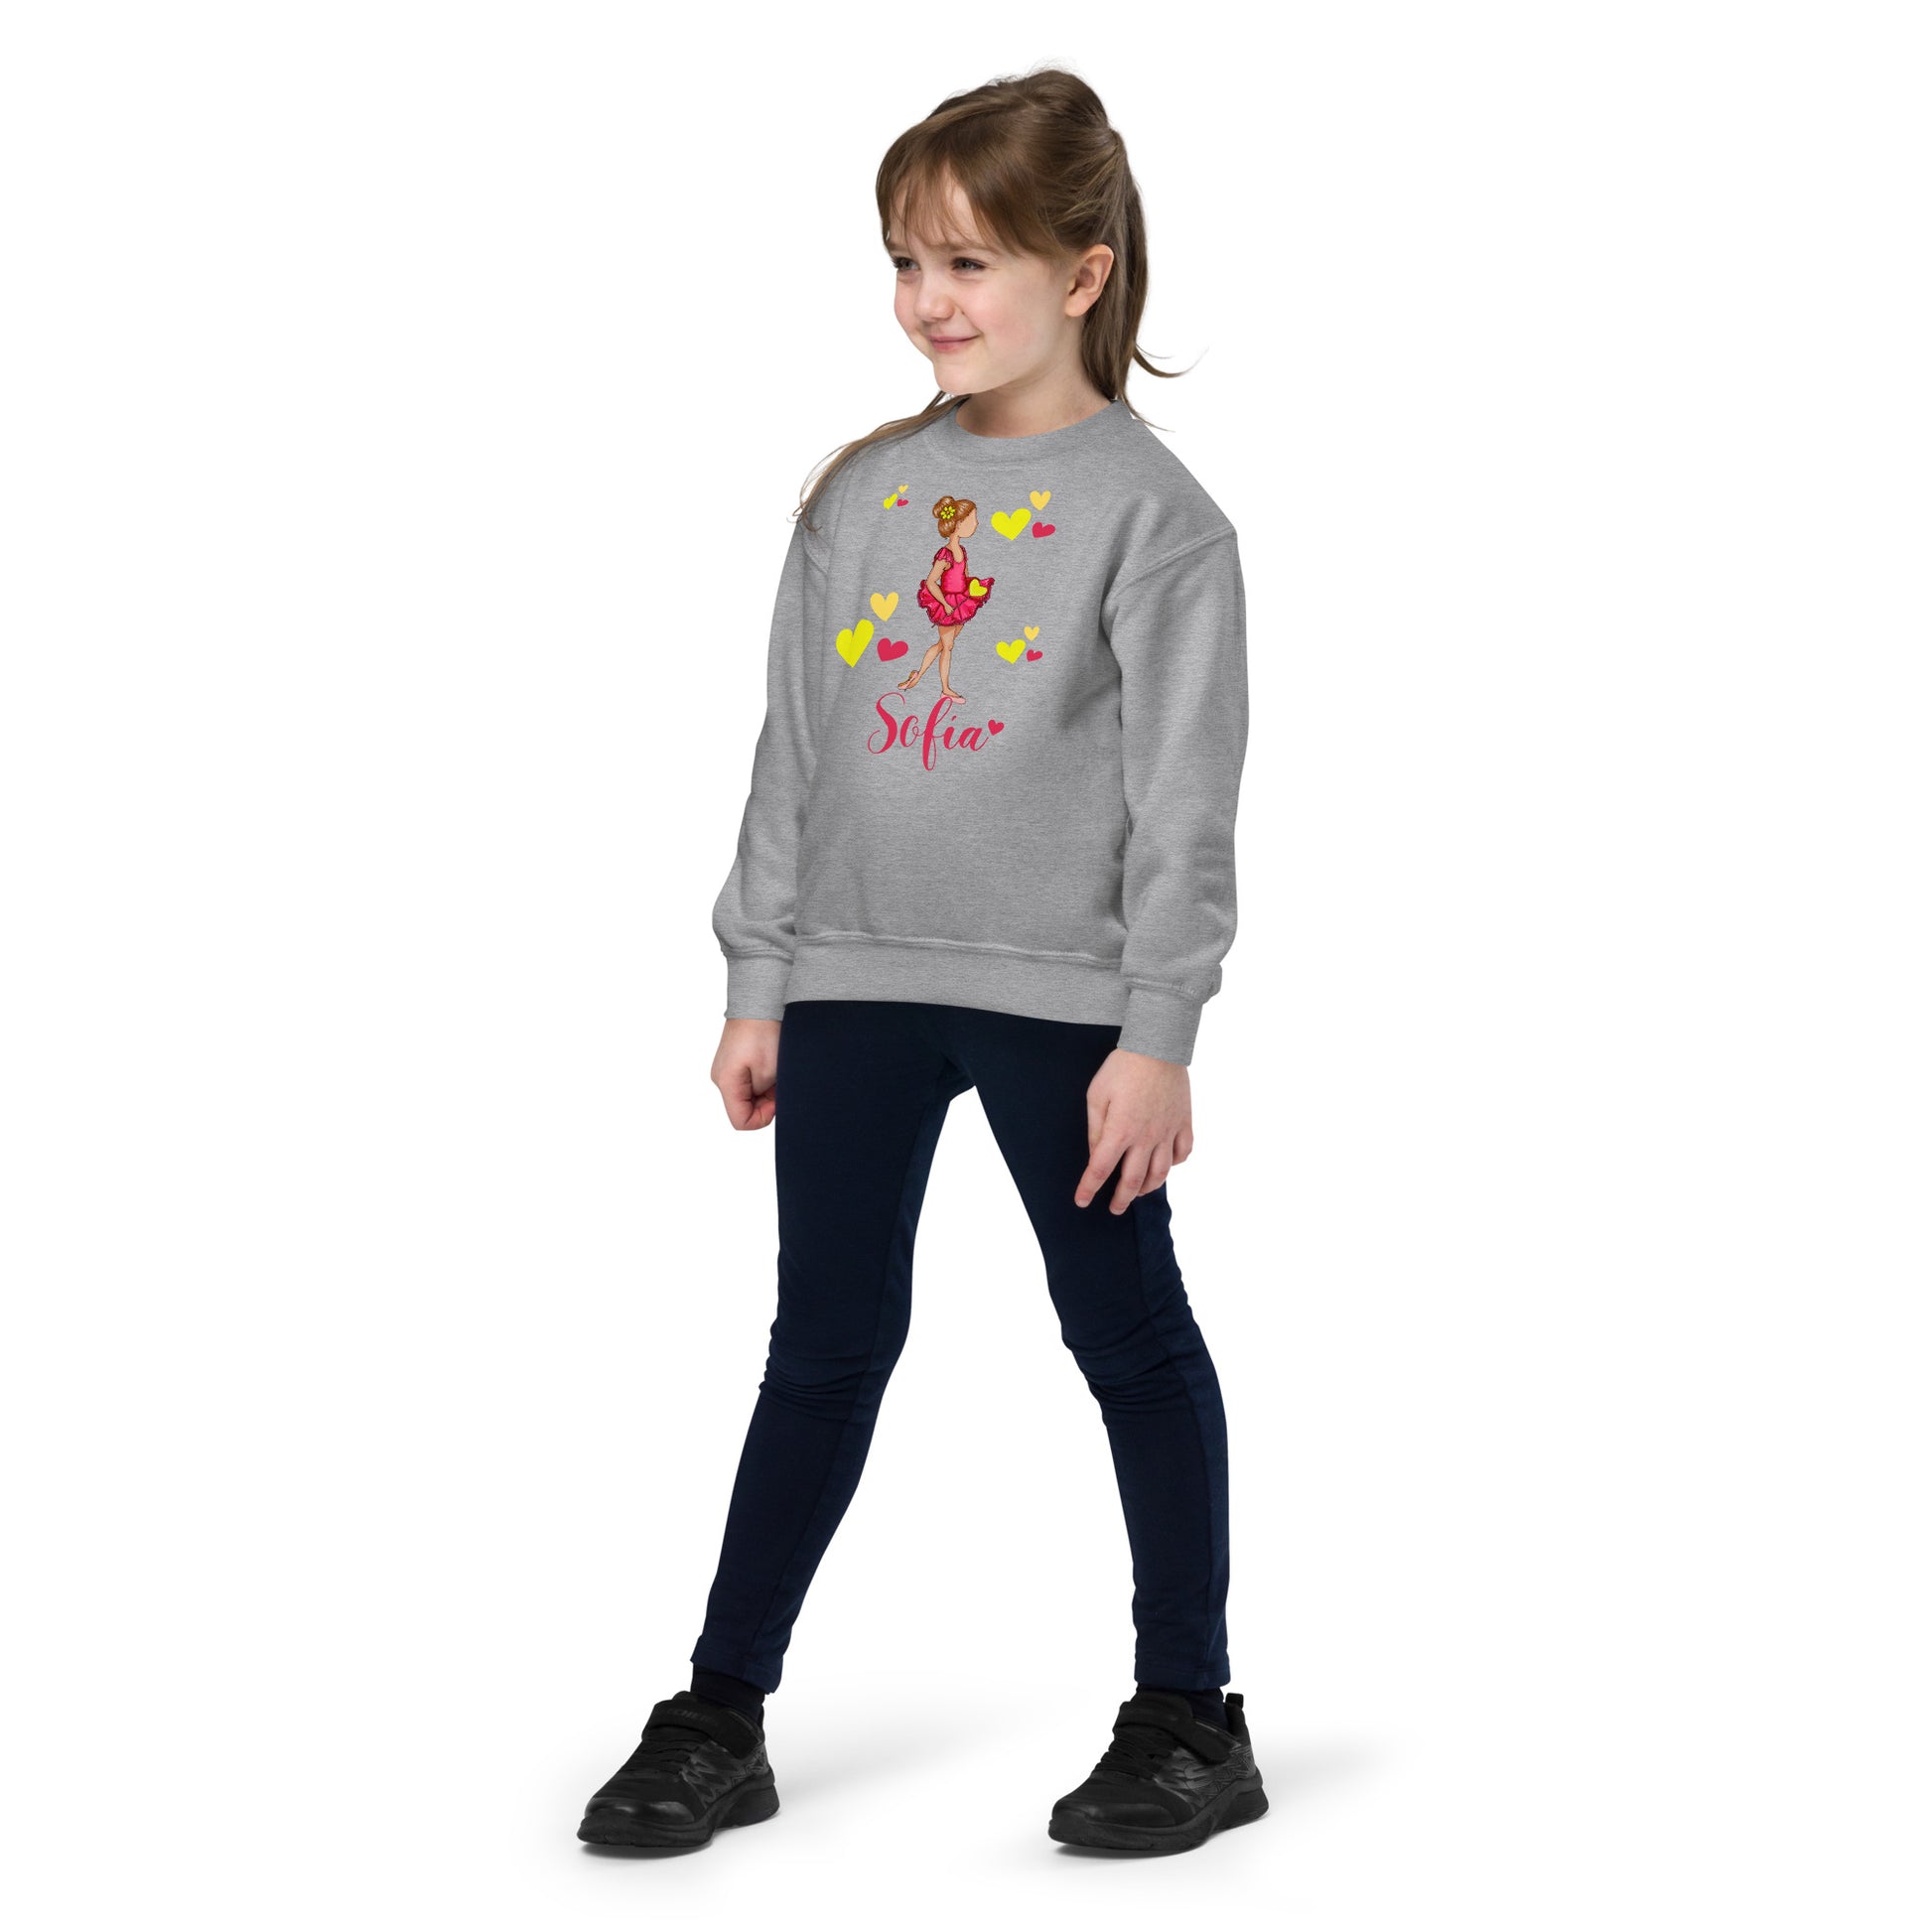 a little girl wearing a sweatshirt with a flower on it